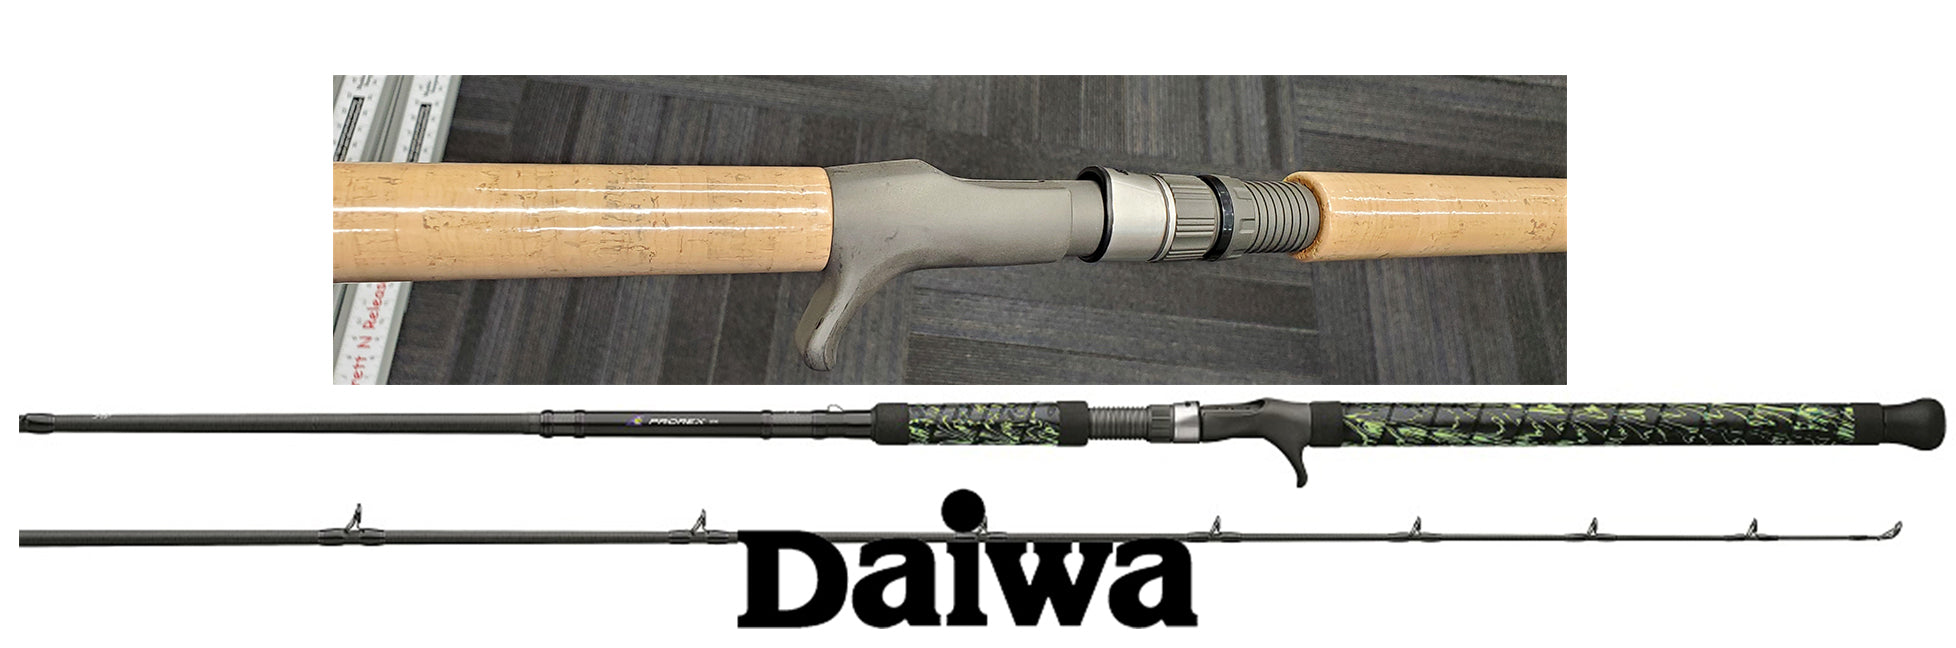 Daiwa Prorex E Spinning Rod